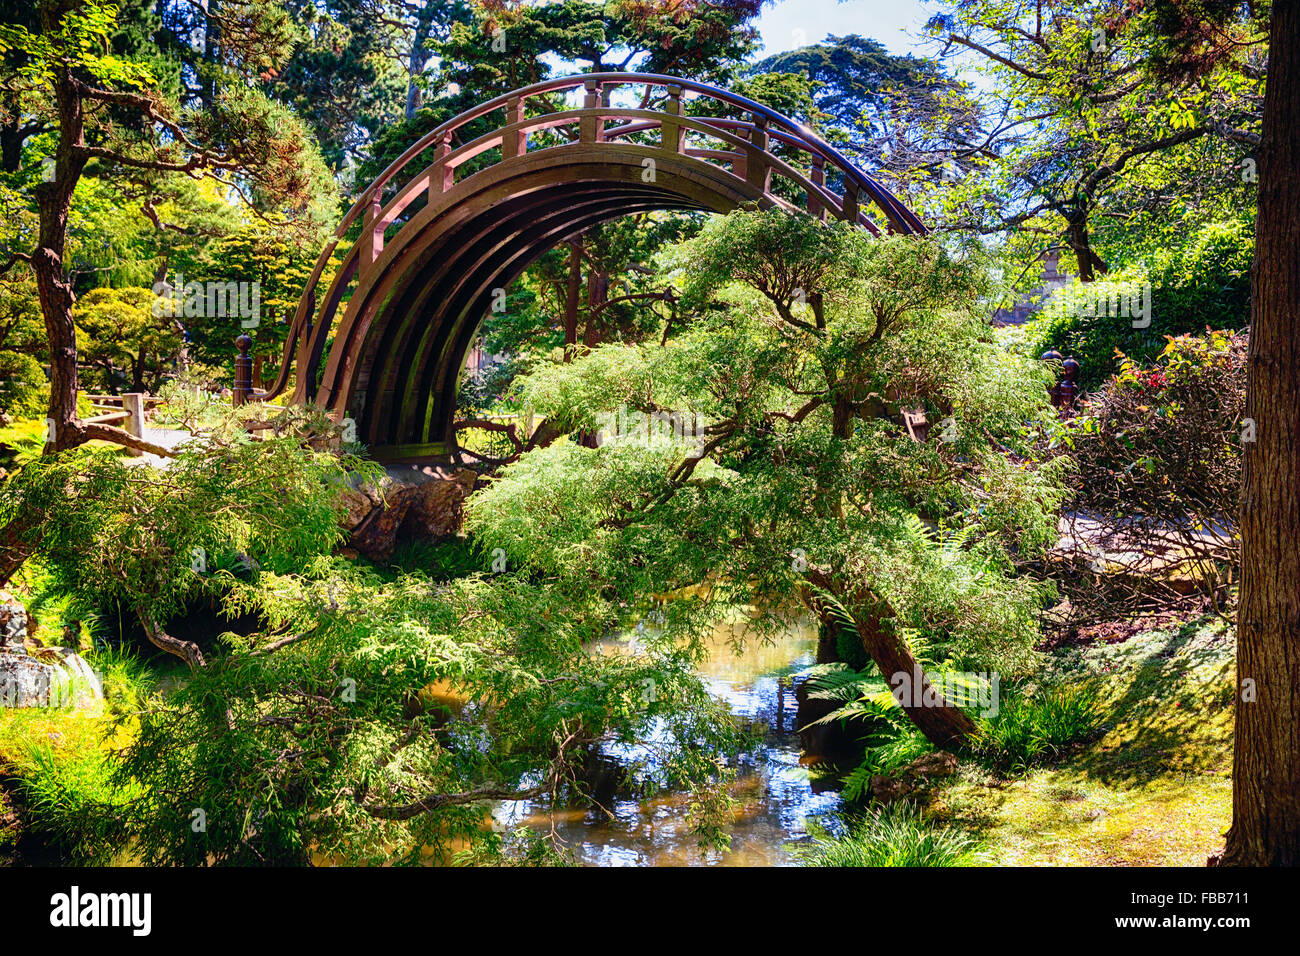 Basso angolo vista di una Luna ponte sopra un piccolo ruscello in un giardino giapponese, Golden Gate Park di San Francisco, California Foto Stock